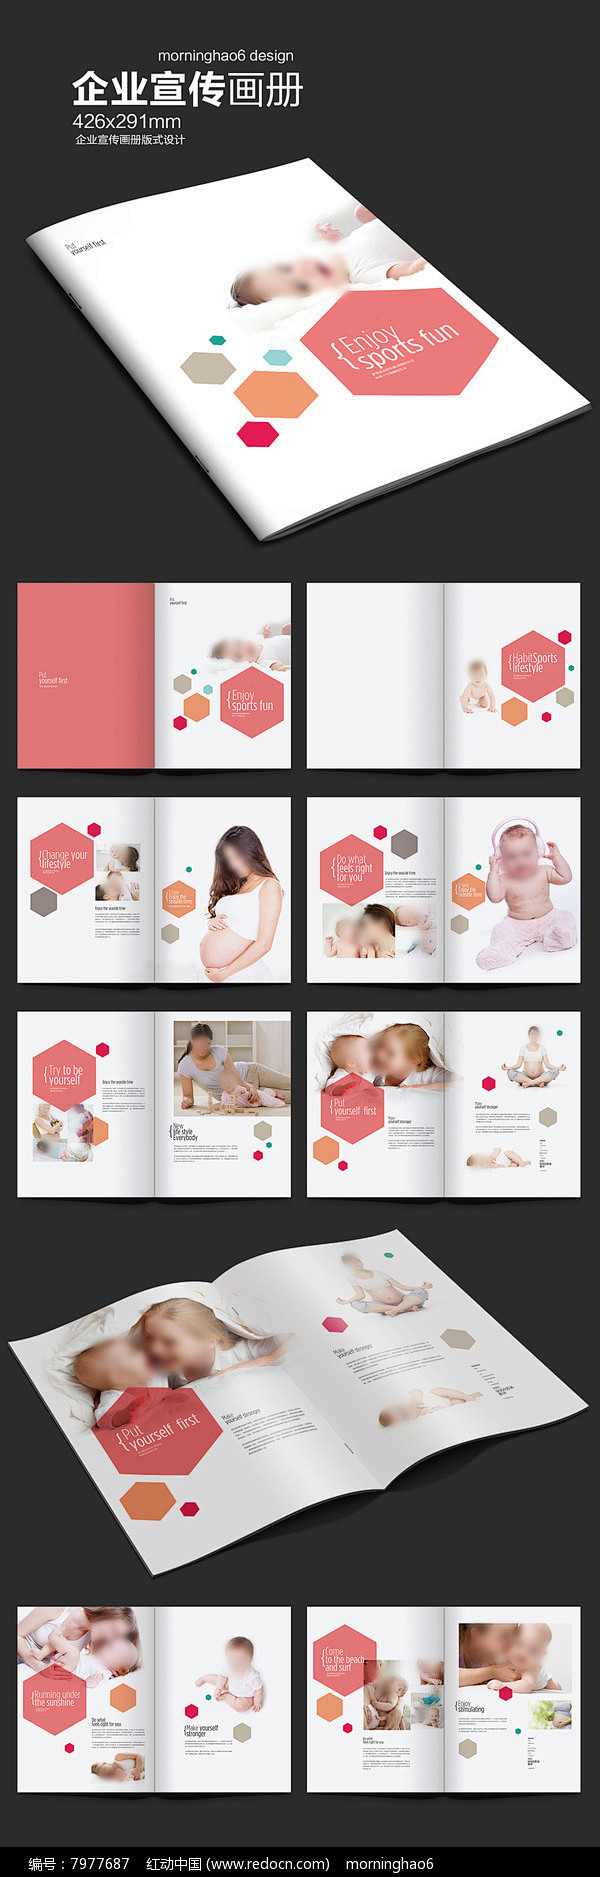 元素系列六边形孕婴产品画册图片 粉红色手...